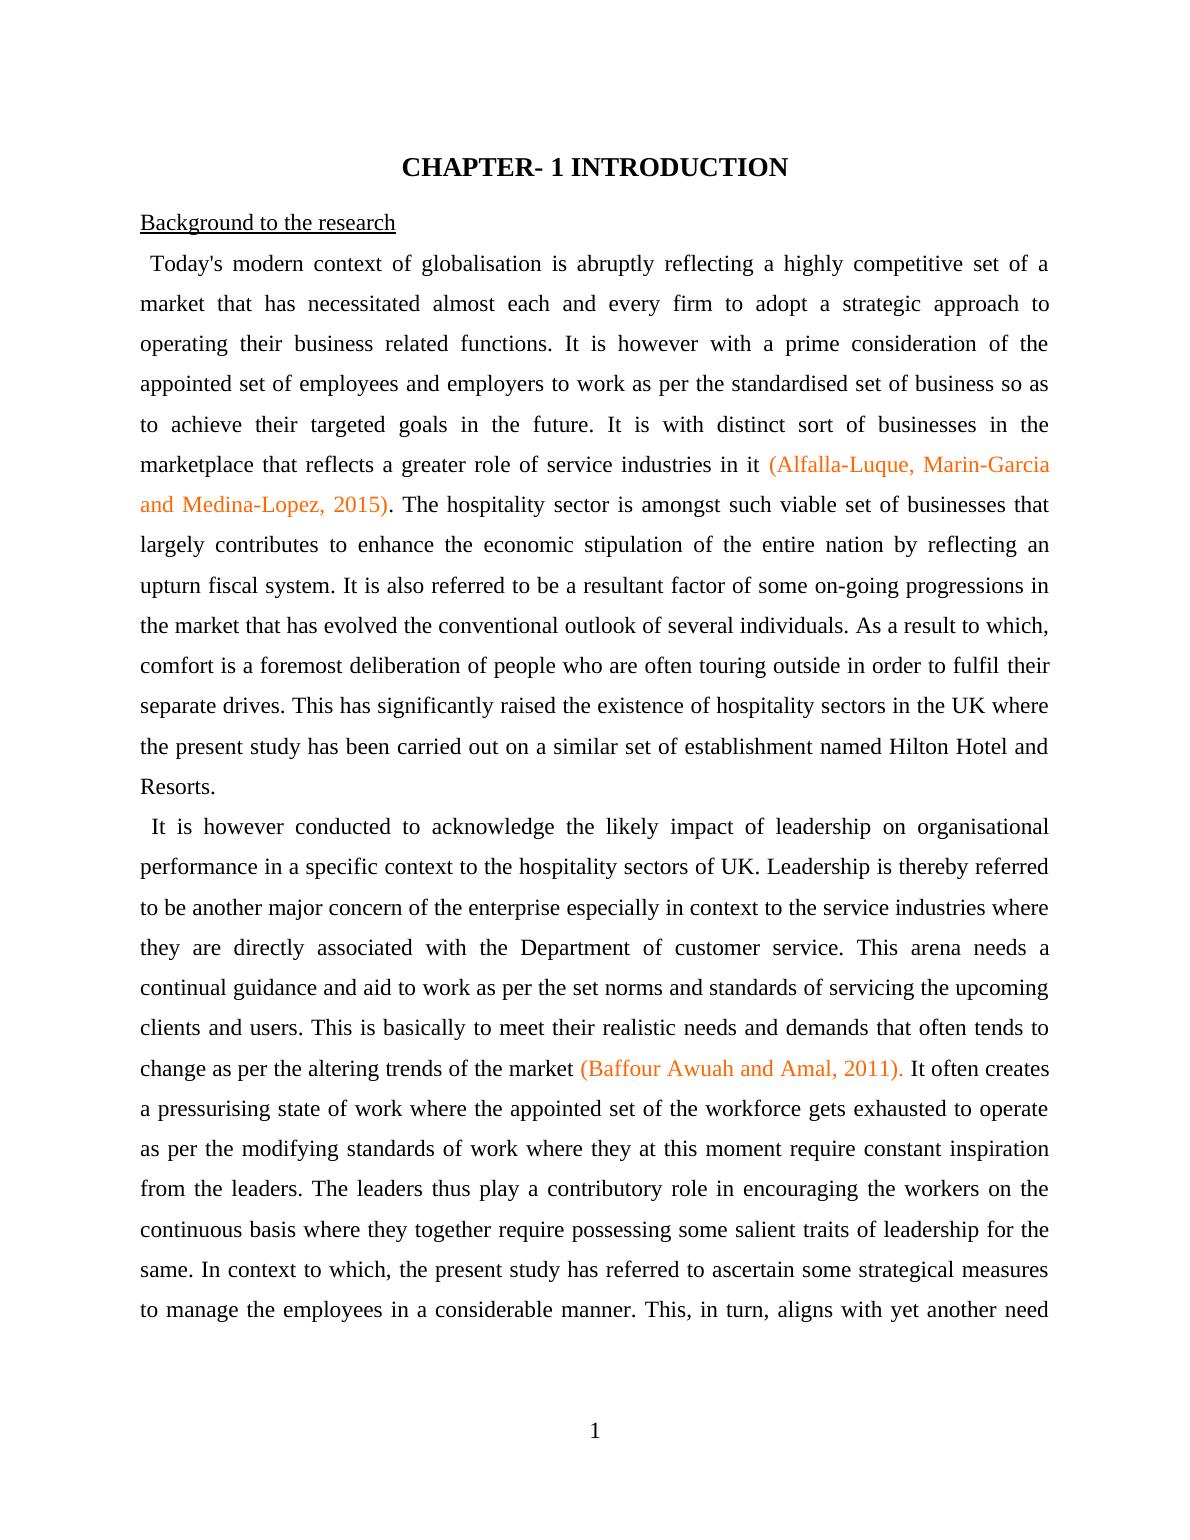 PDF: Impact of leadership on organisational performance_6